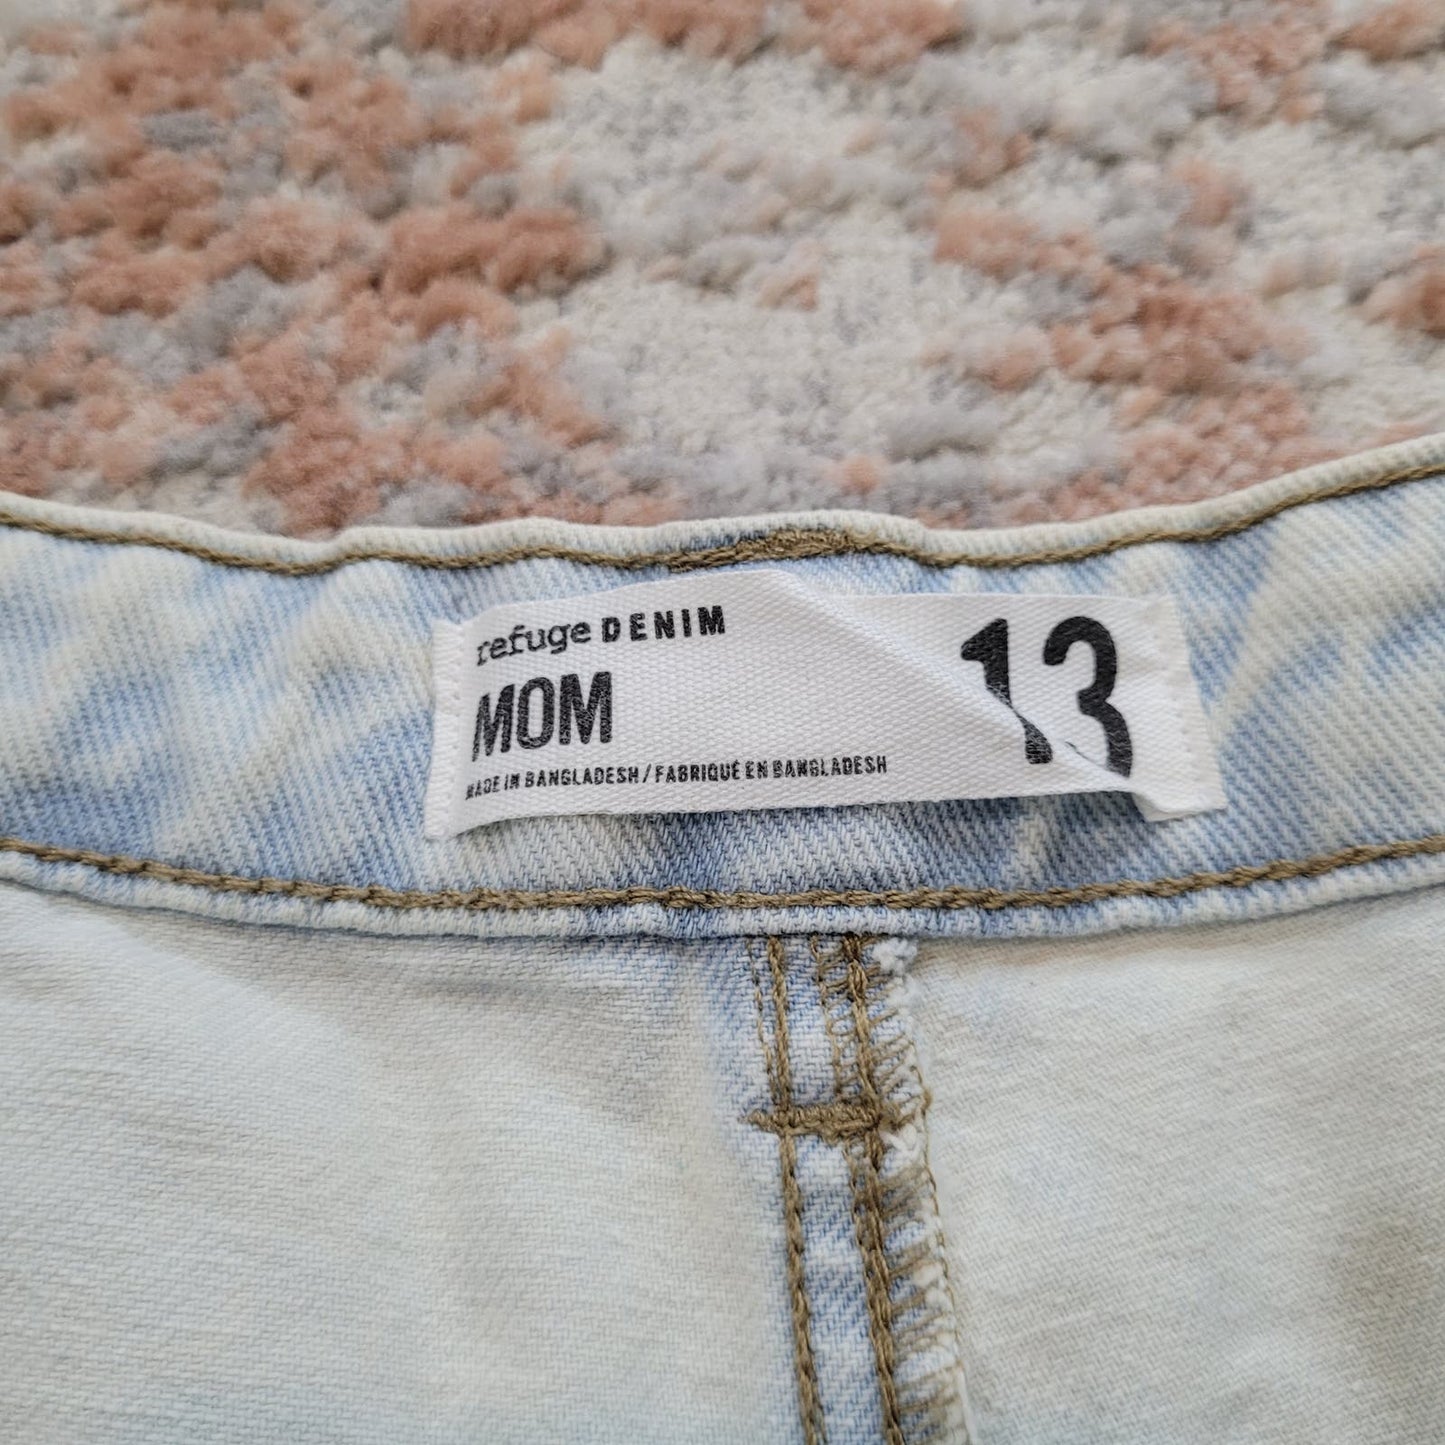 Refuge Denim Bleached MOM Jeans - Size 13